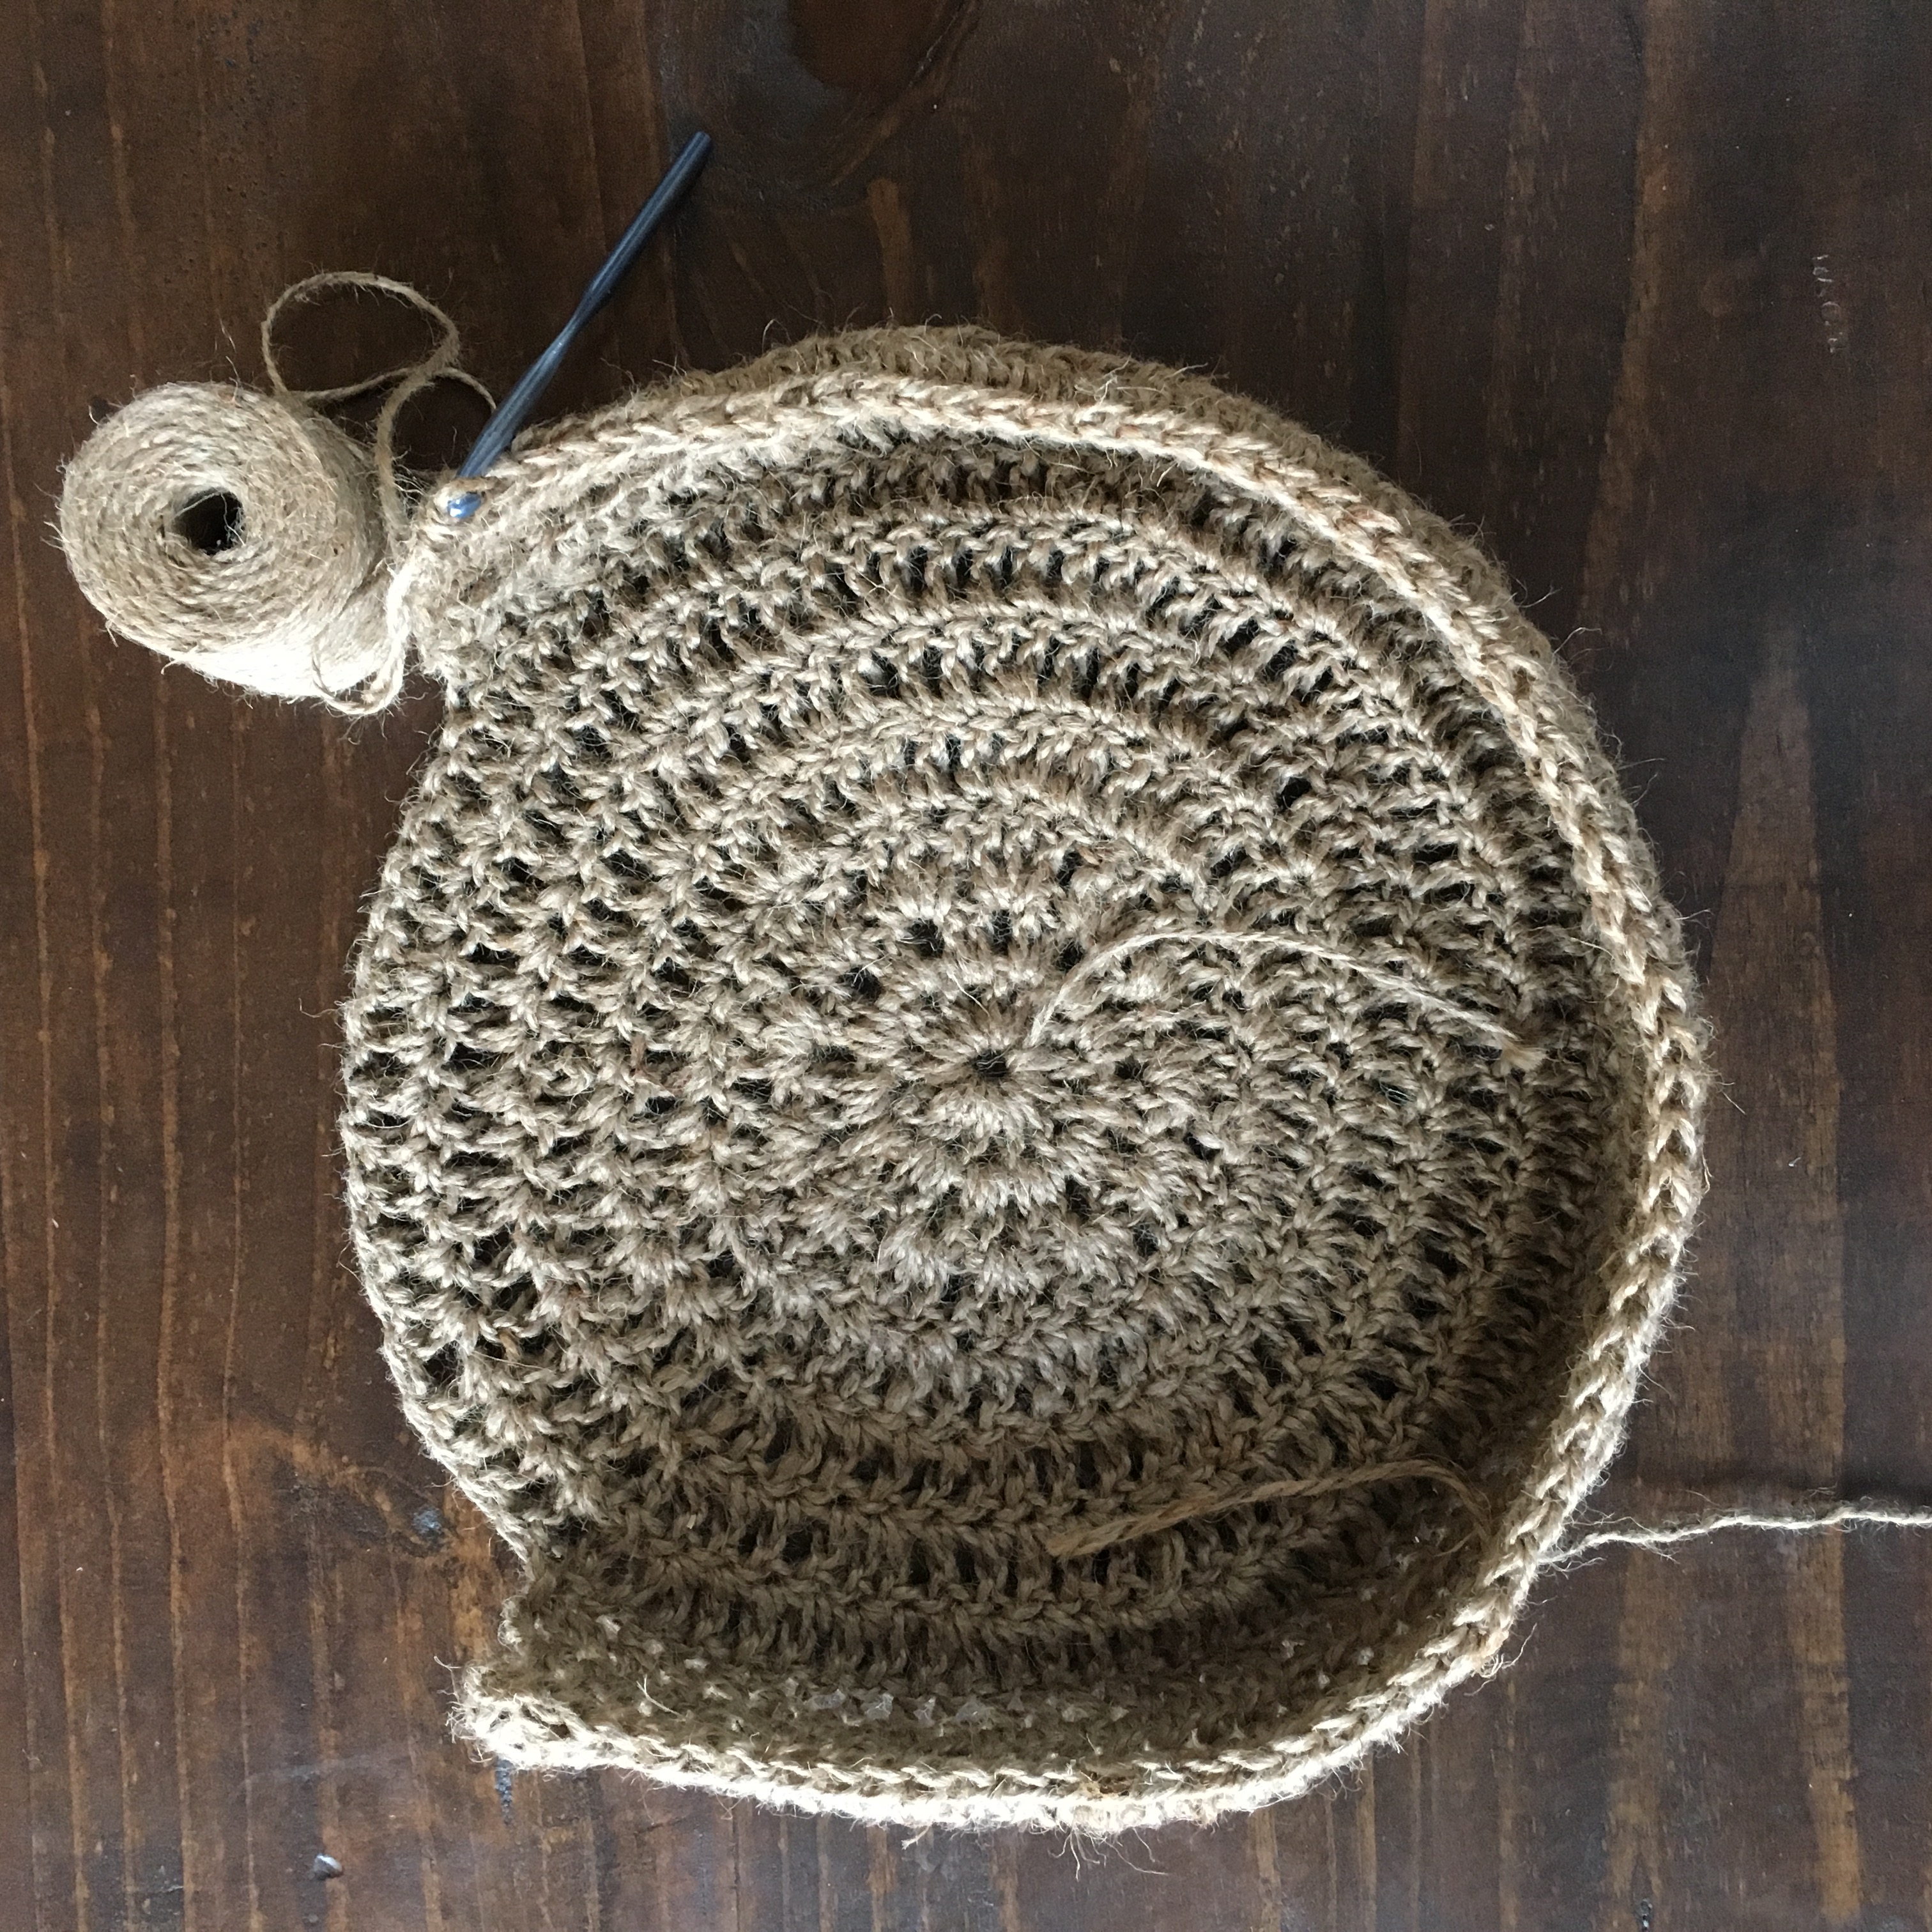 CROCHET PATTERN Baker Street Bag. Crocheted in the Roundeasy 